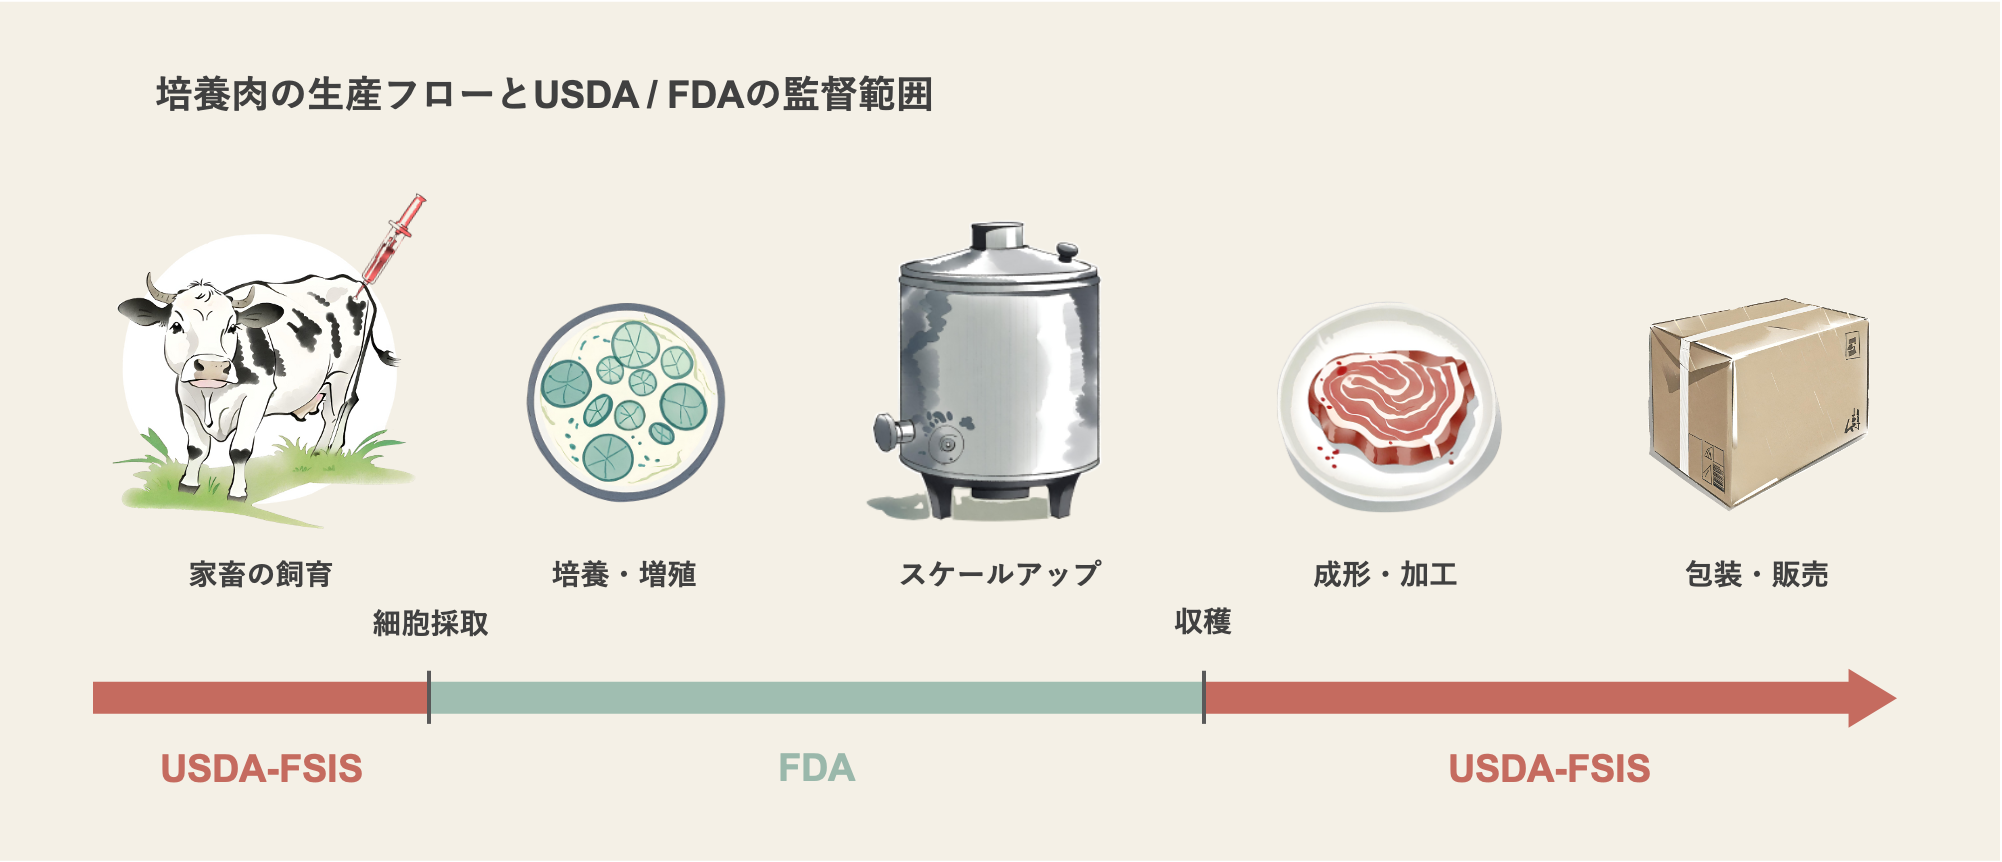 培養肉の生産フローとUSDA/FDAの監督範囲